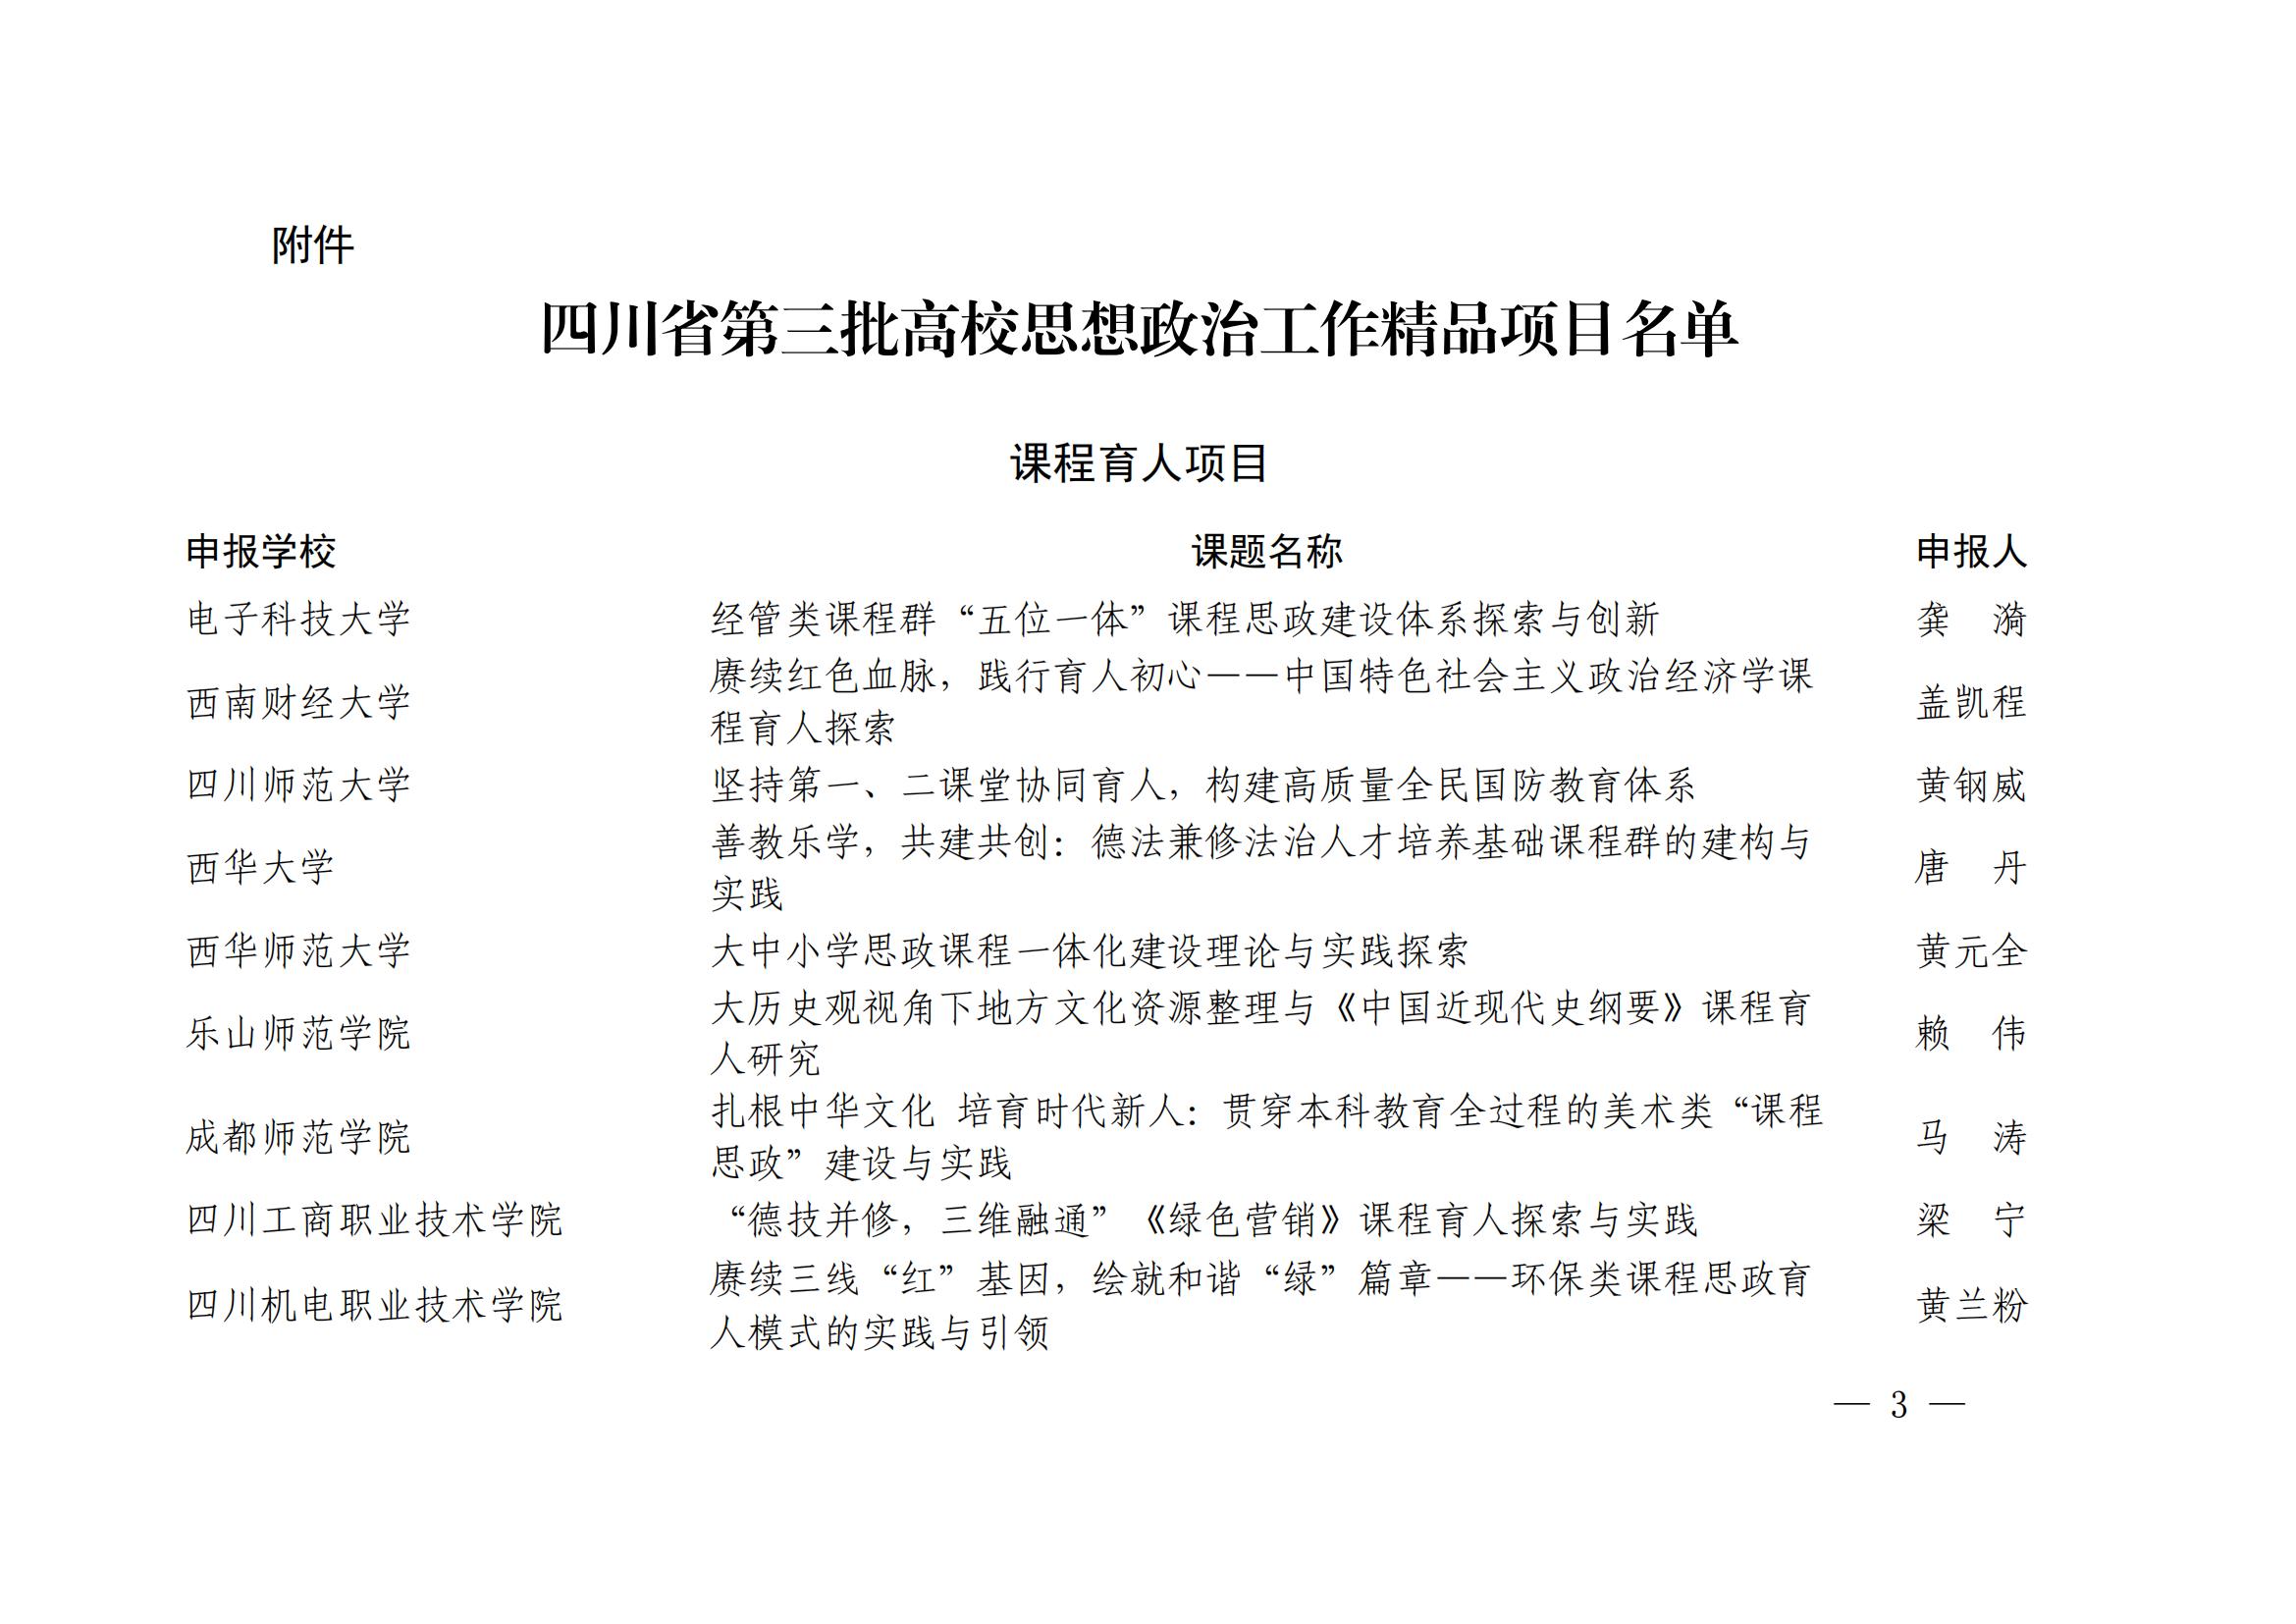 四川省教育厅关于公布第三批全省高校思想政治工作精品项目评选结果的通知